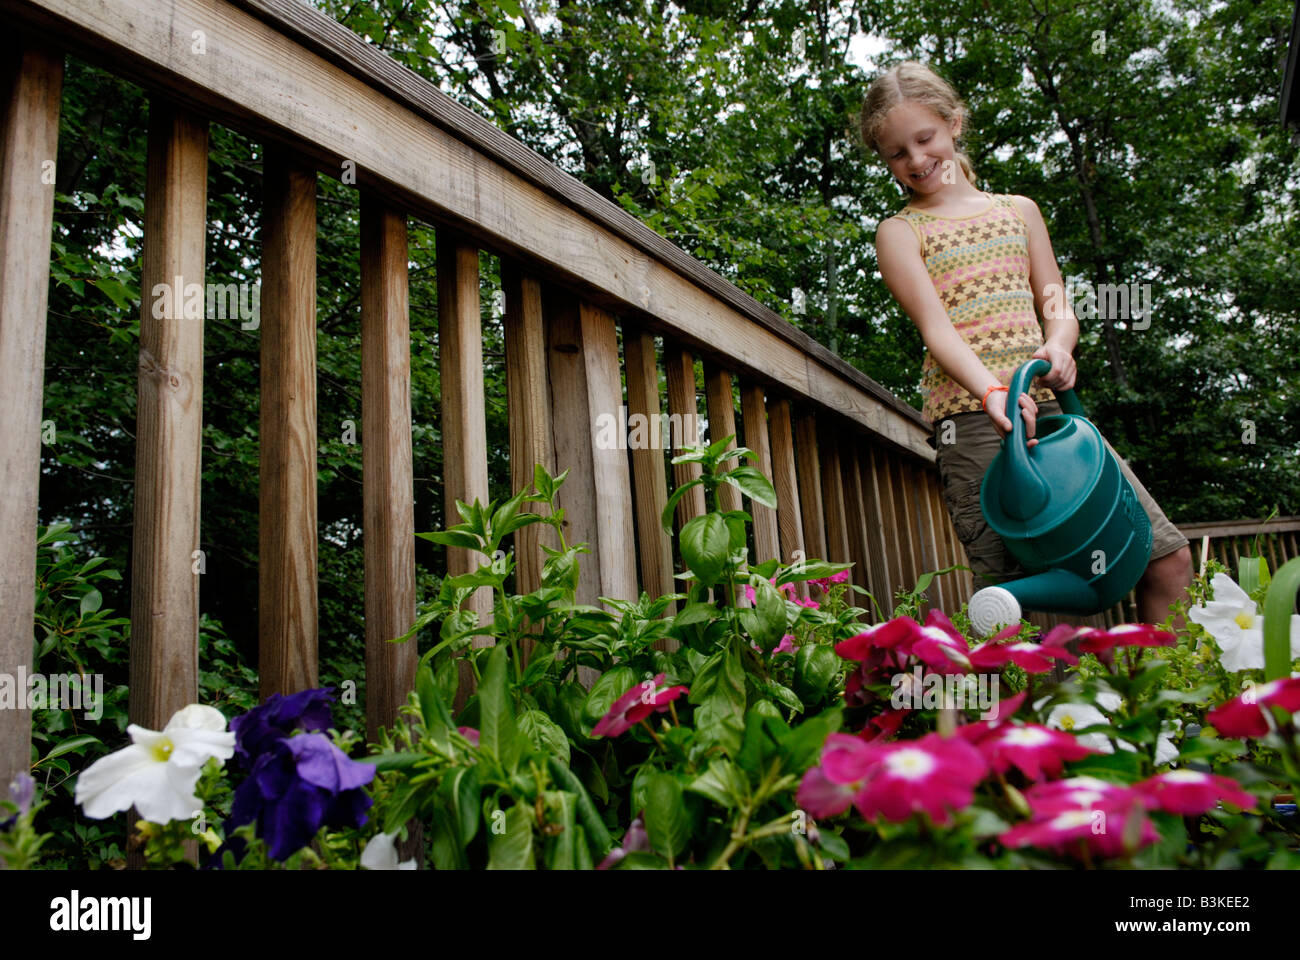 Une fillette de neuf ans fleurs eaux Légumes et herbes dans un jardin de banlieue urbaine sur une plate-forme arrière d'une maison Banque D'Images